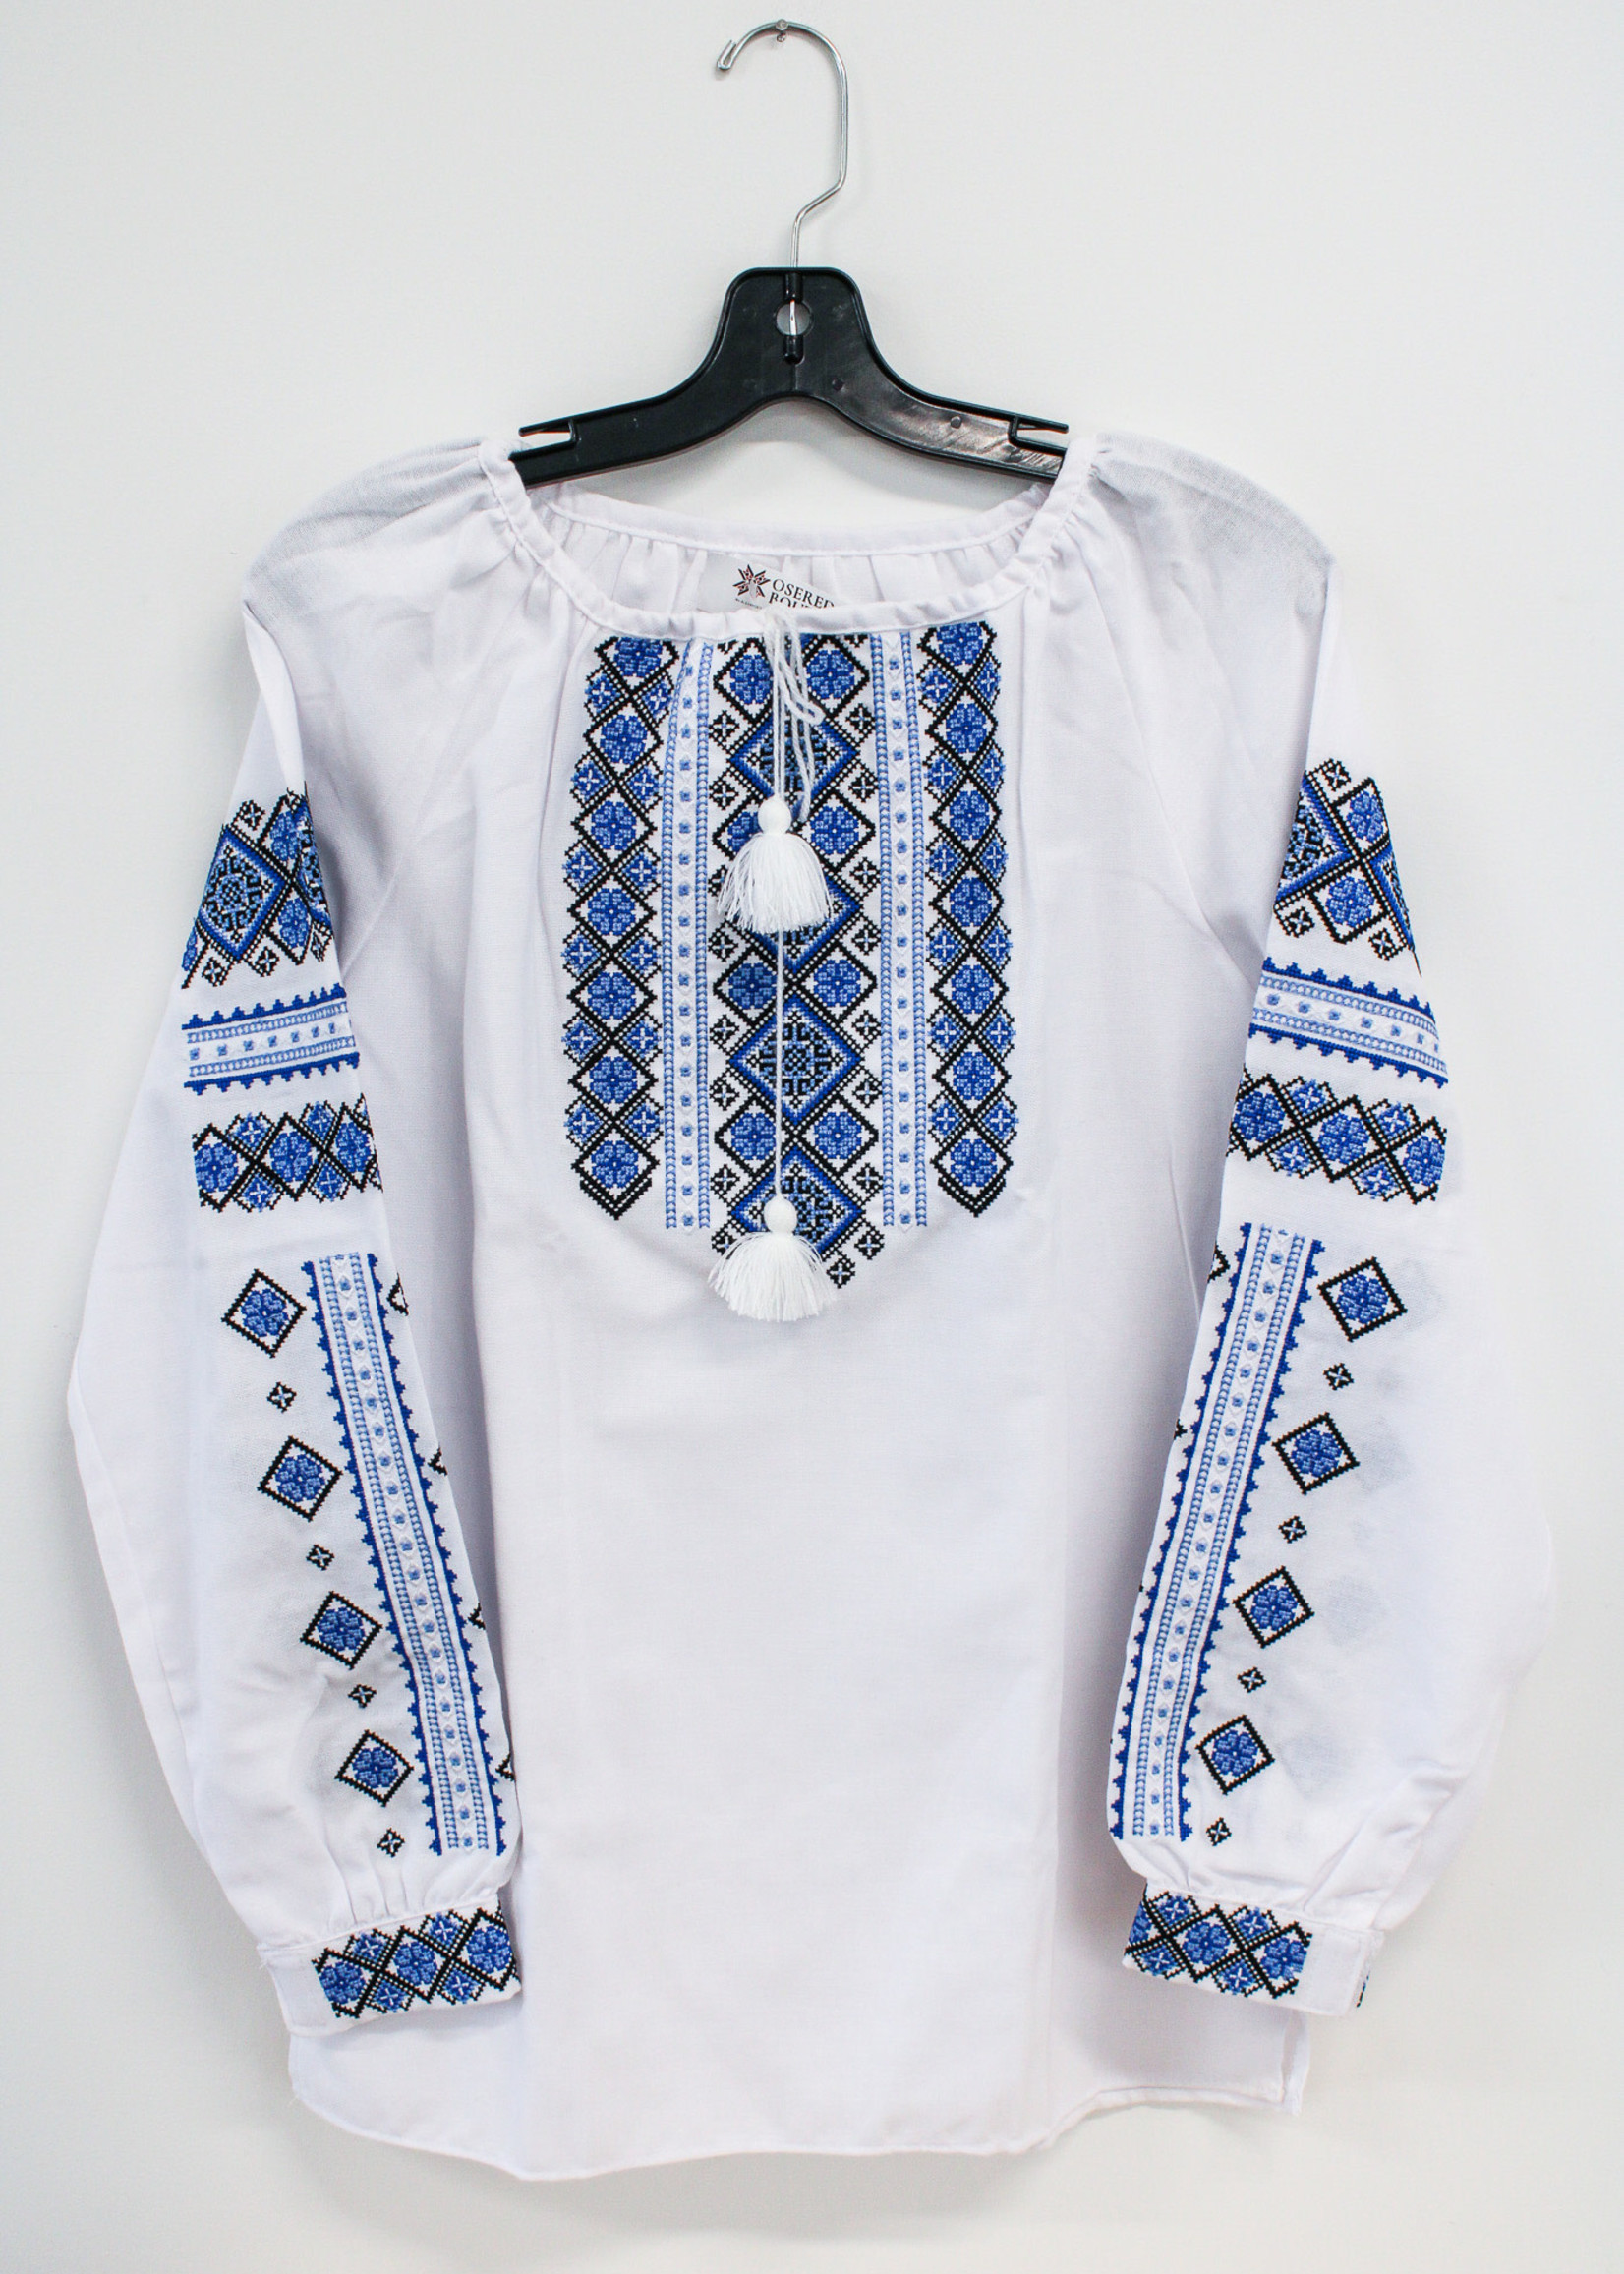 APPAREL - (W)Vyshyvanka White/Blue /Light Blue  Embroidery